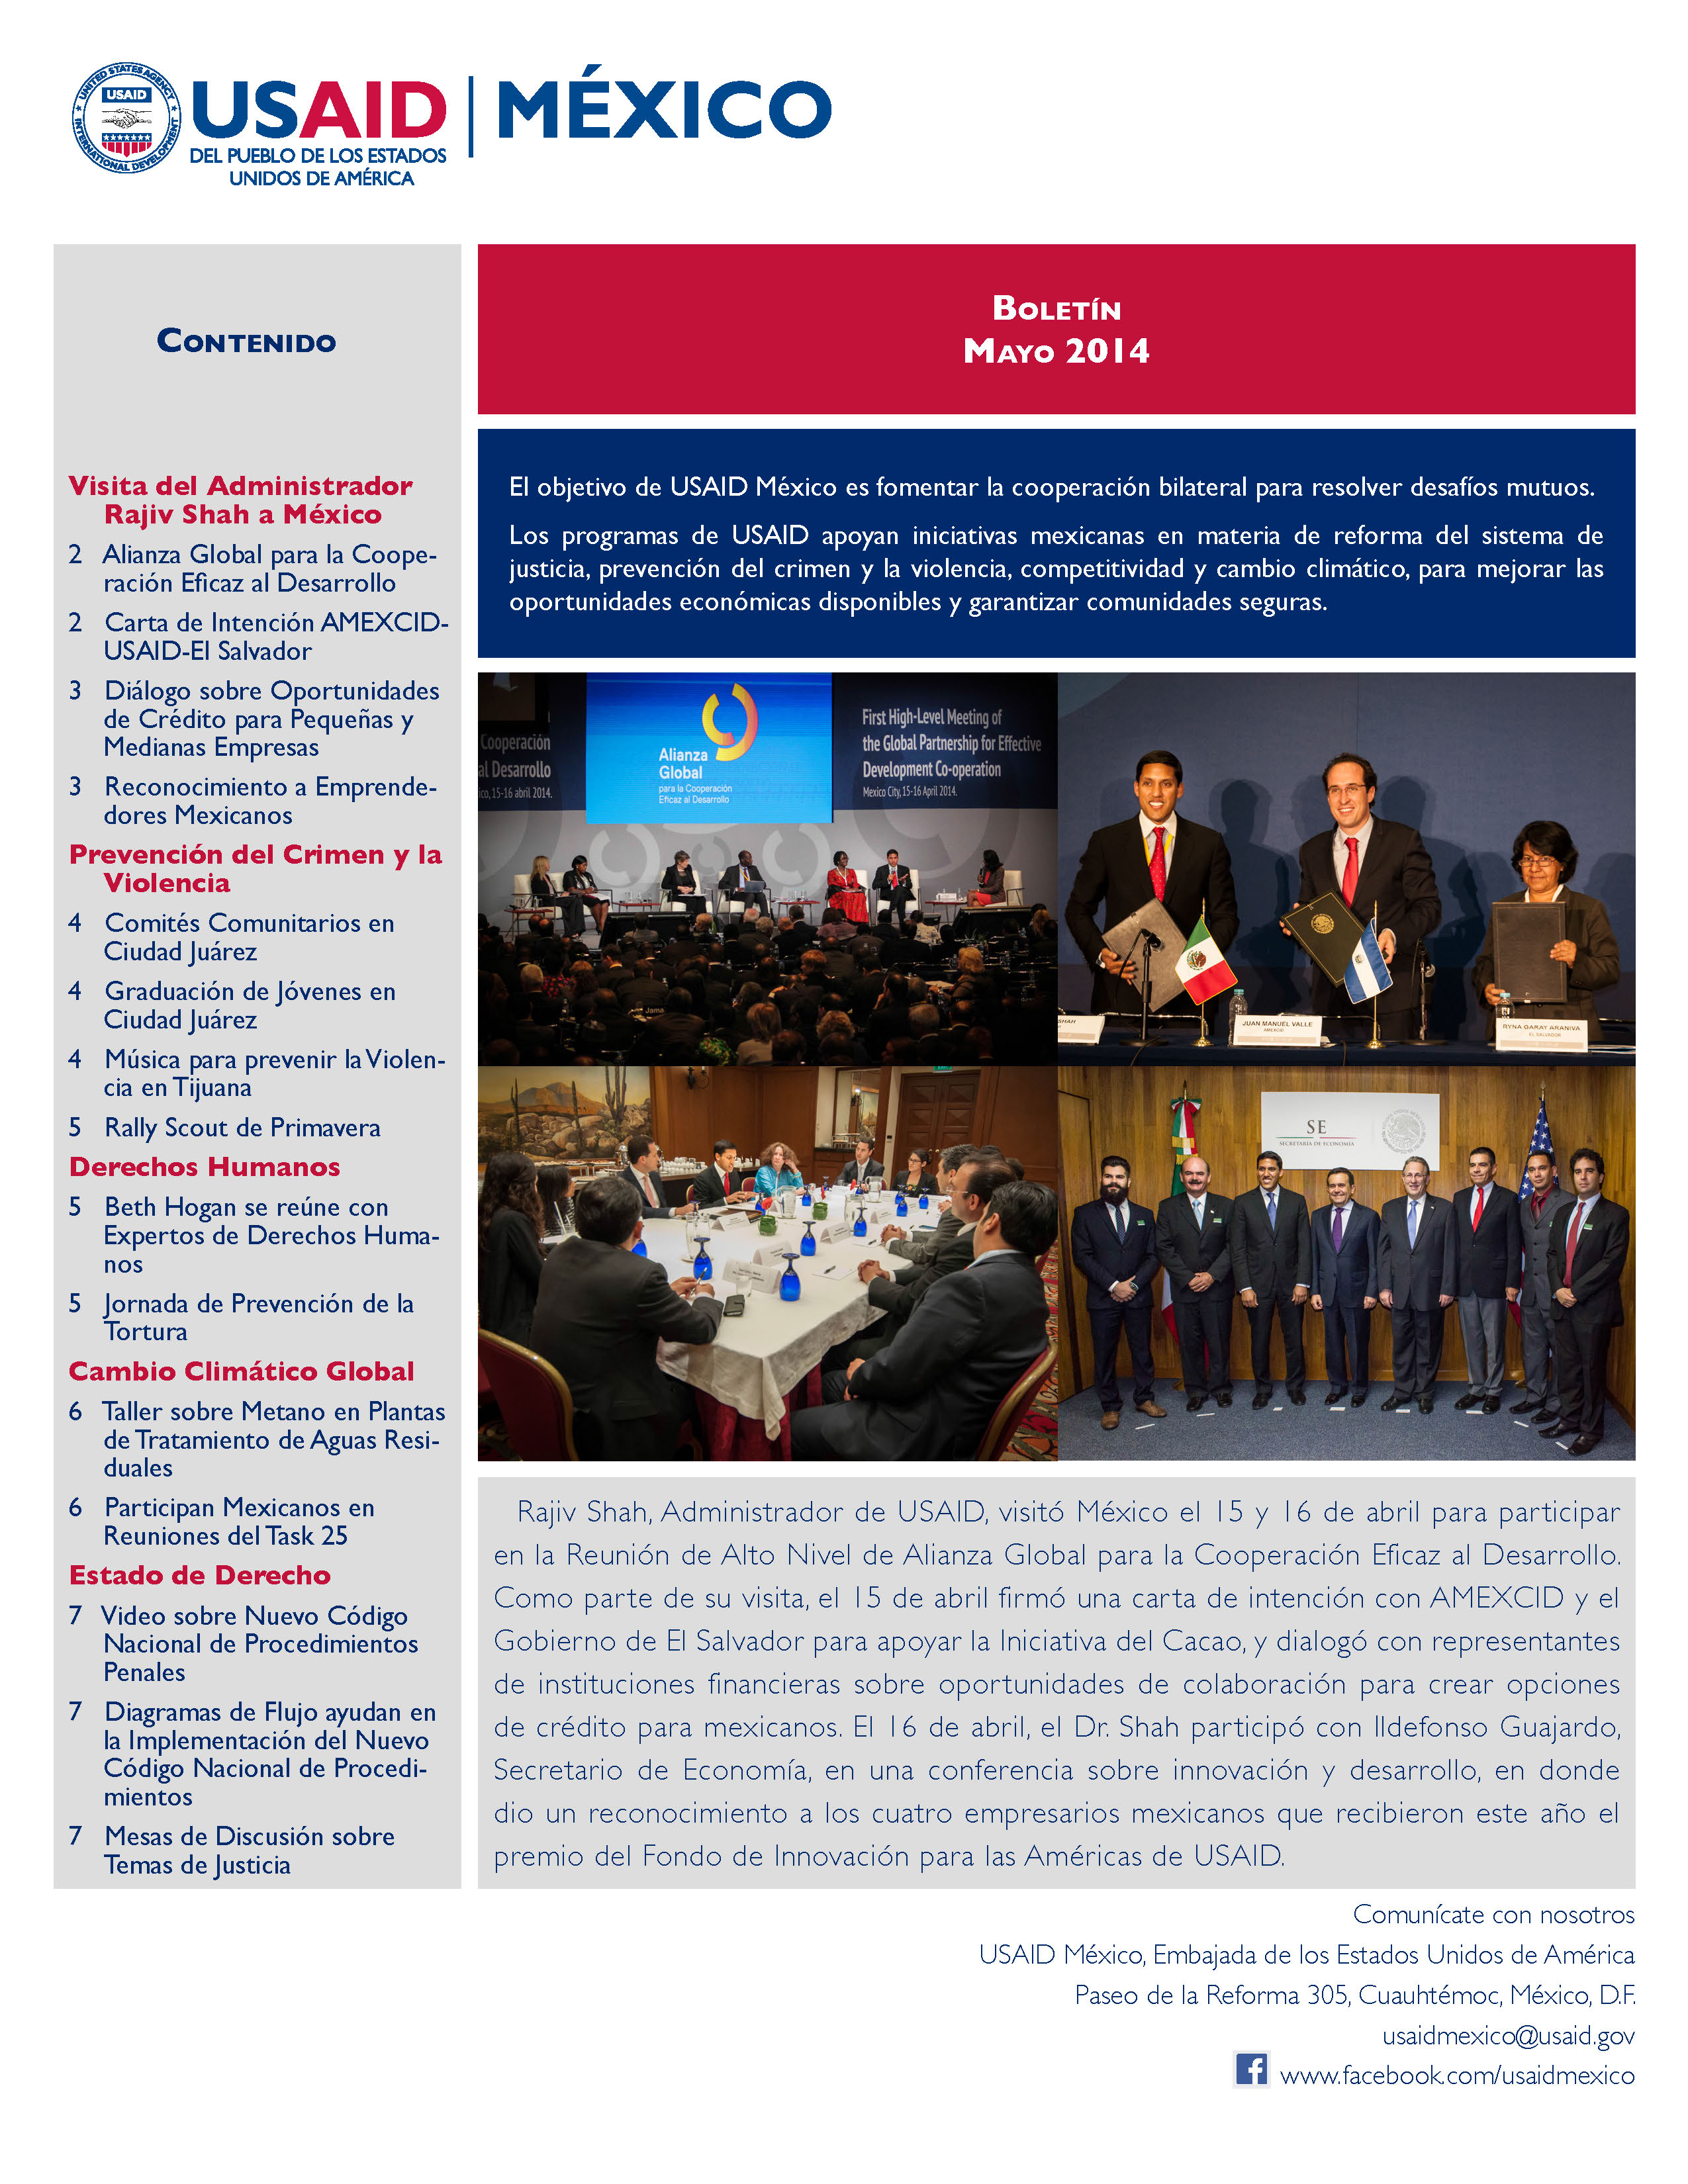 Resumen de actividades de USAID México.